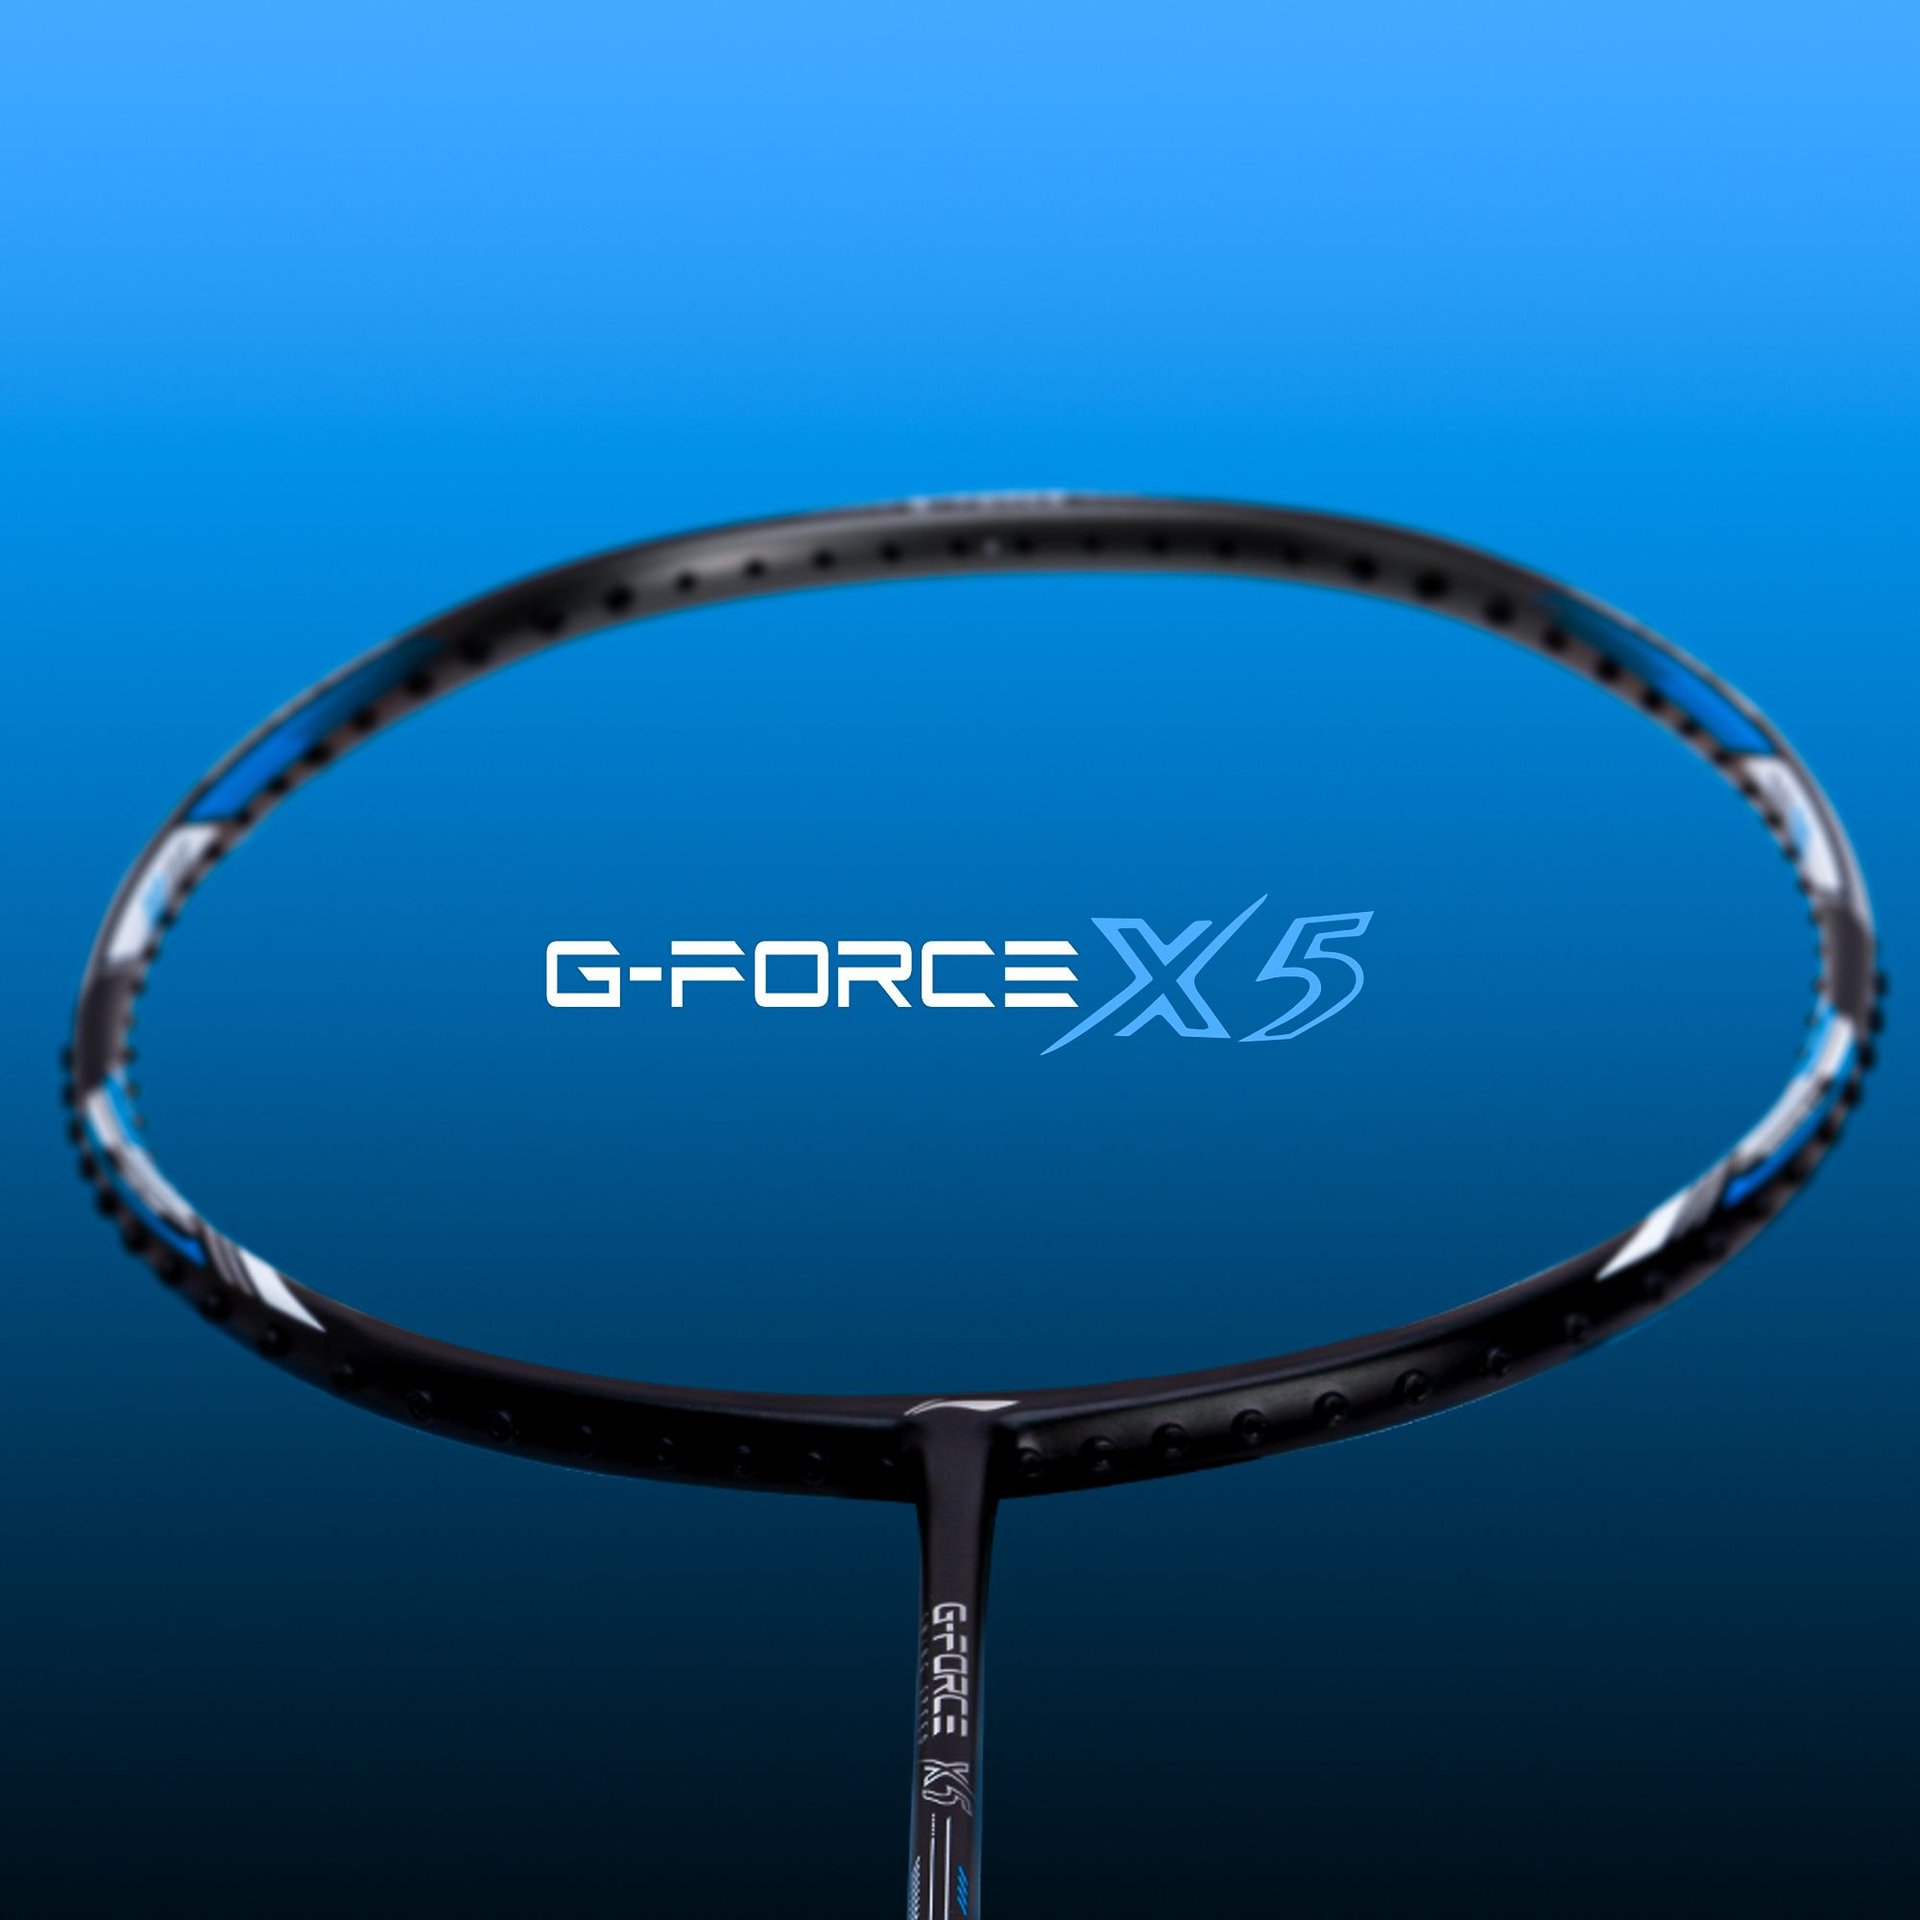 G-Force X5 Optimised frame shape